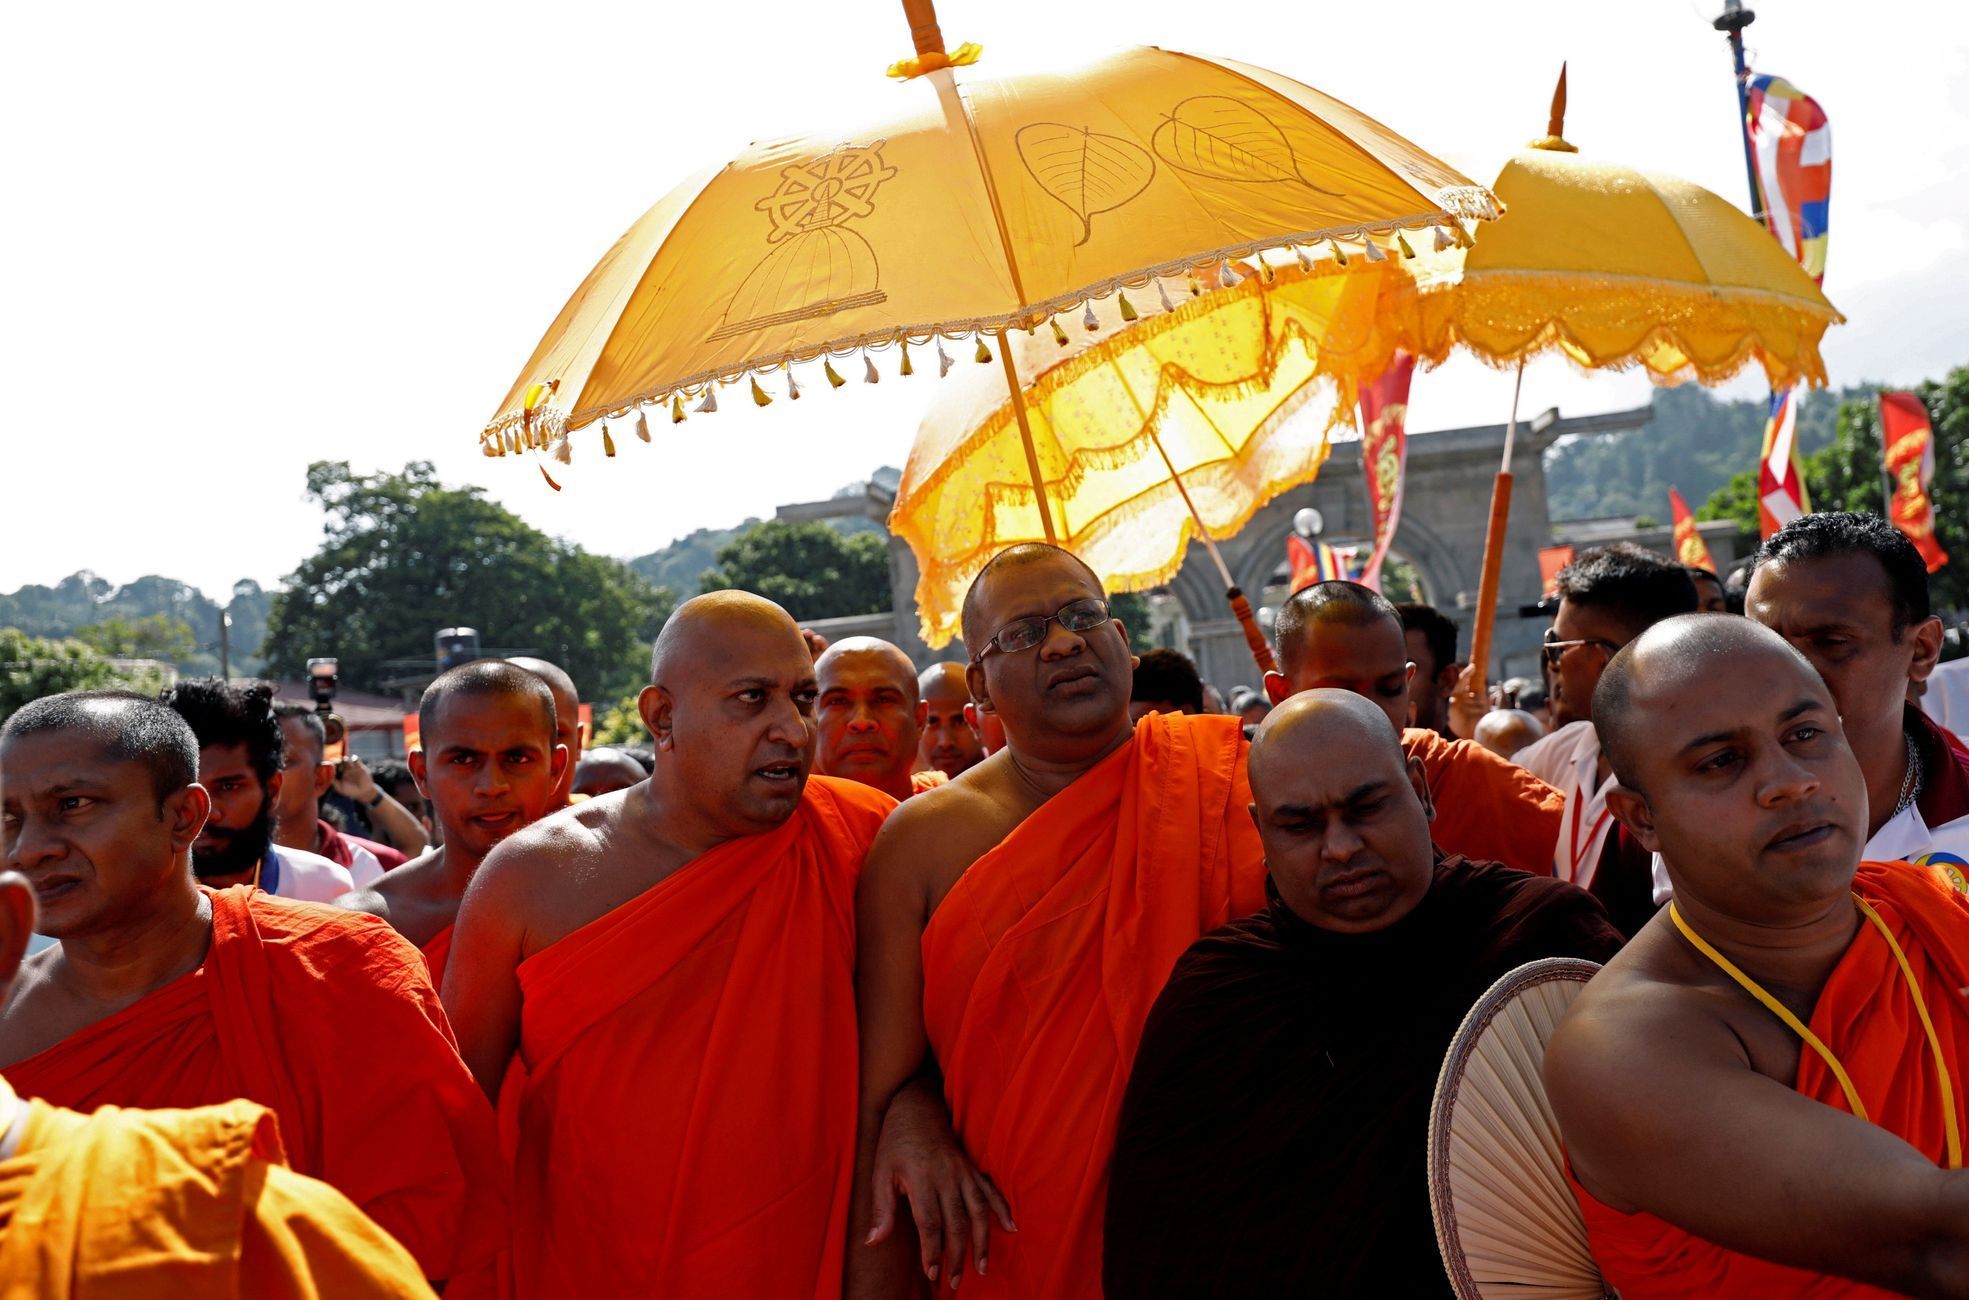 Buddhistické shromáždění na Srí Lance.